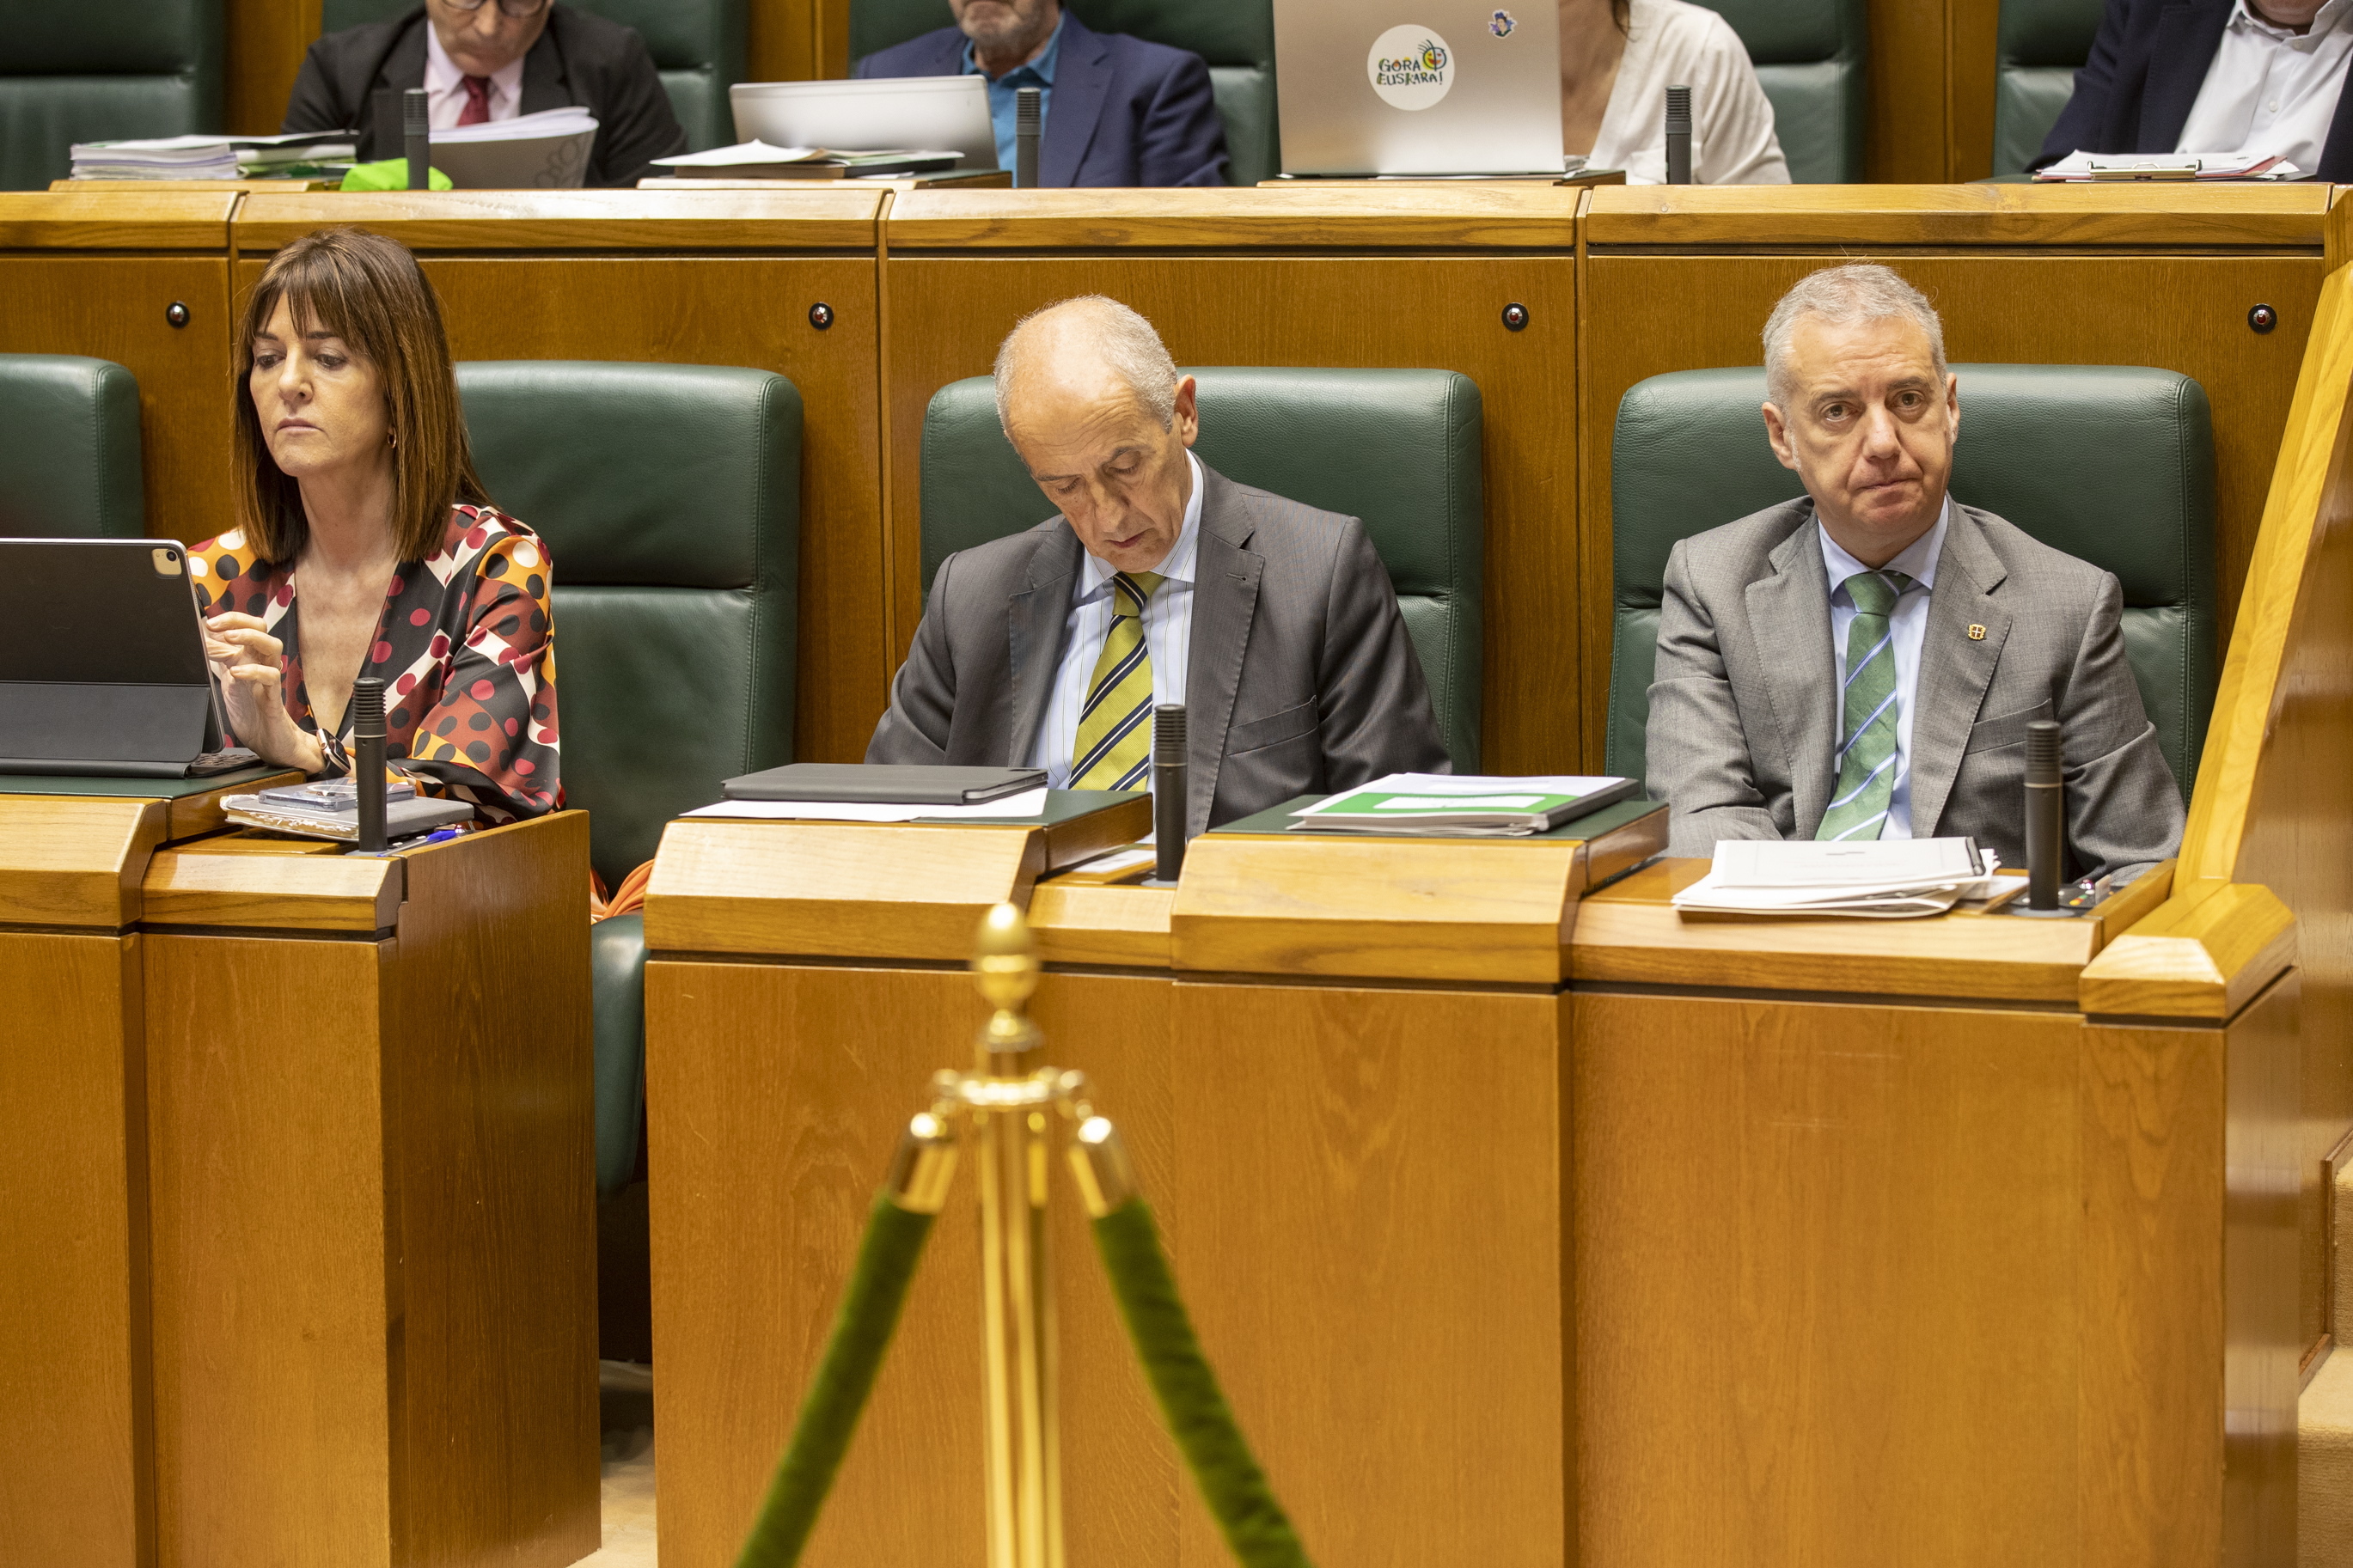 El lehendakari Urkullu sigue el debate mientras los vicelehendakaris Erkoreka y Mendia atienden a sus dispositivos mviles en el pleno del Parlamento Vasco.